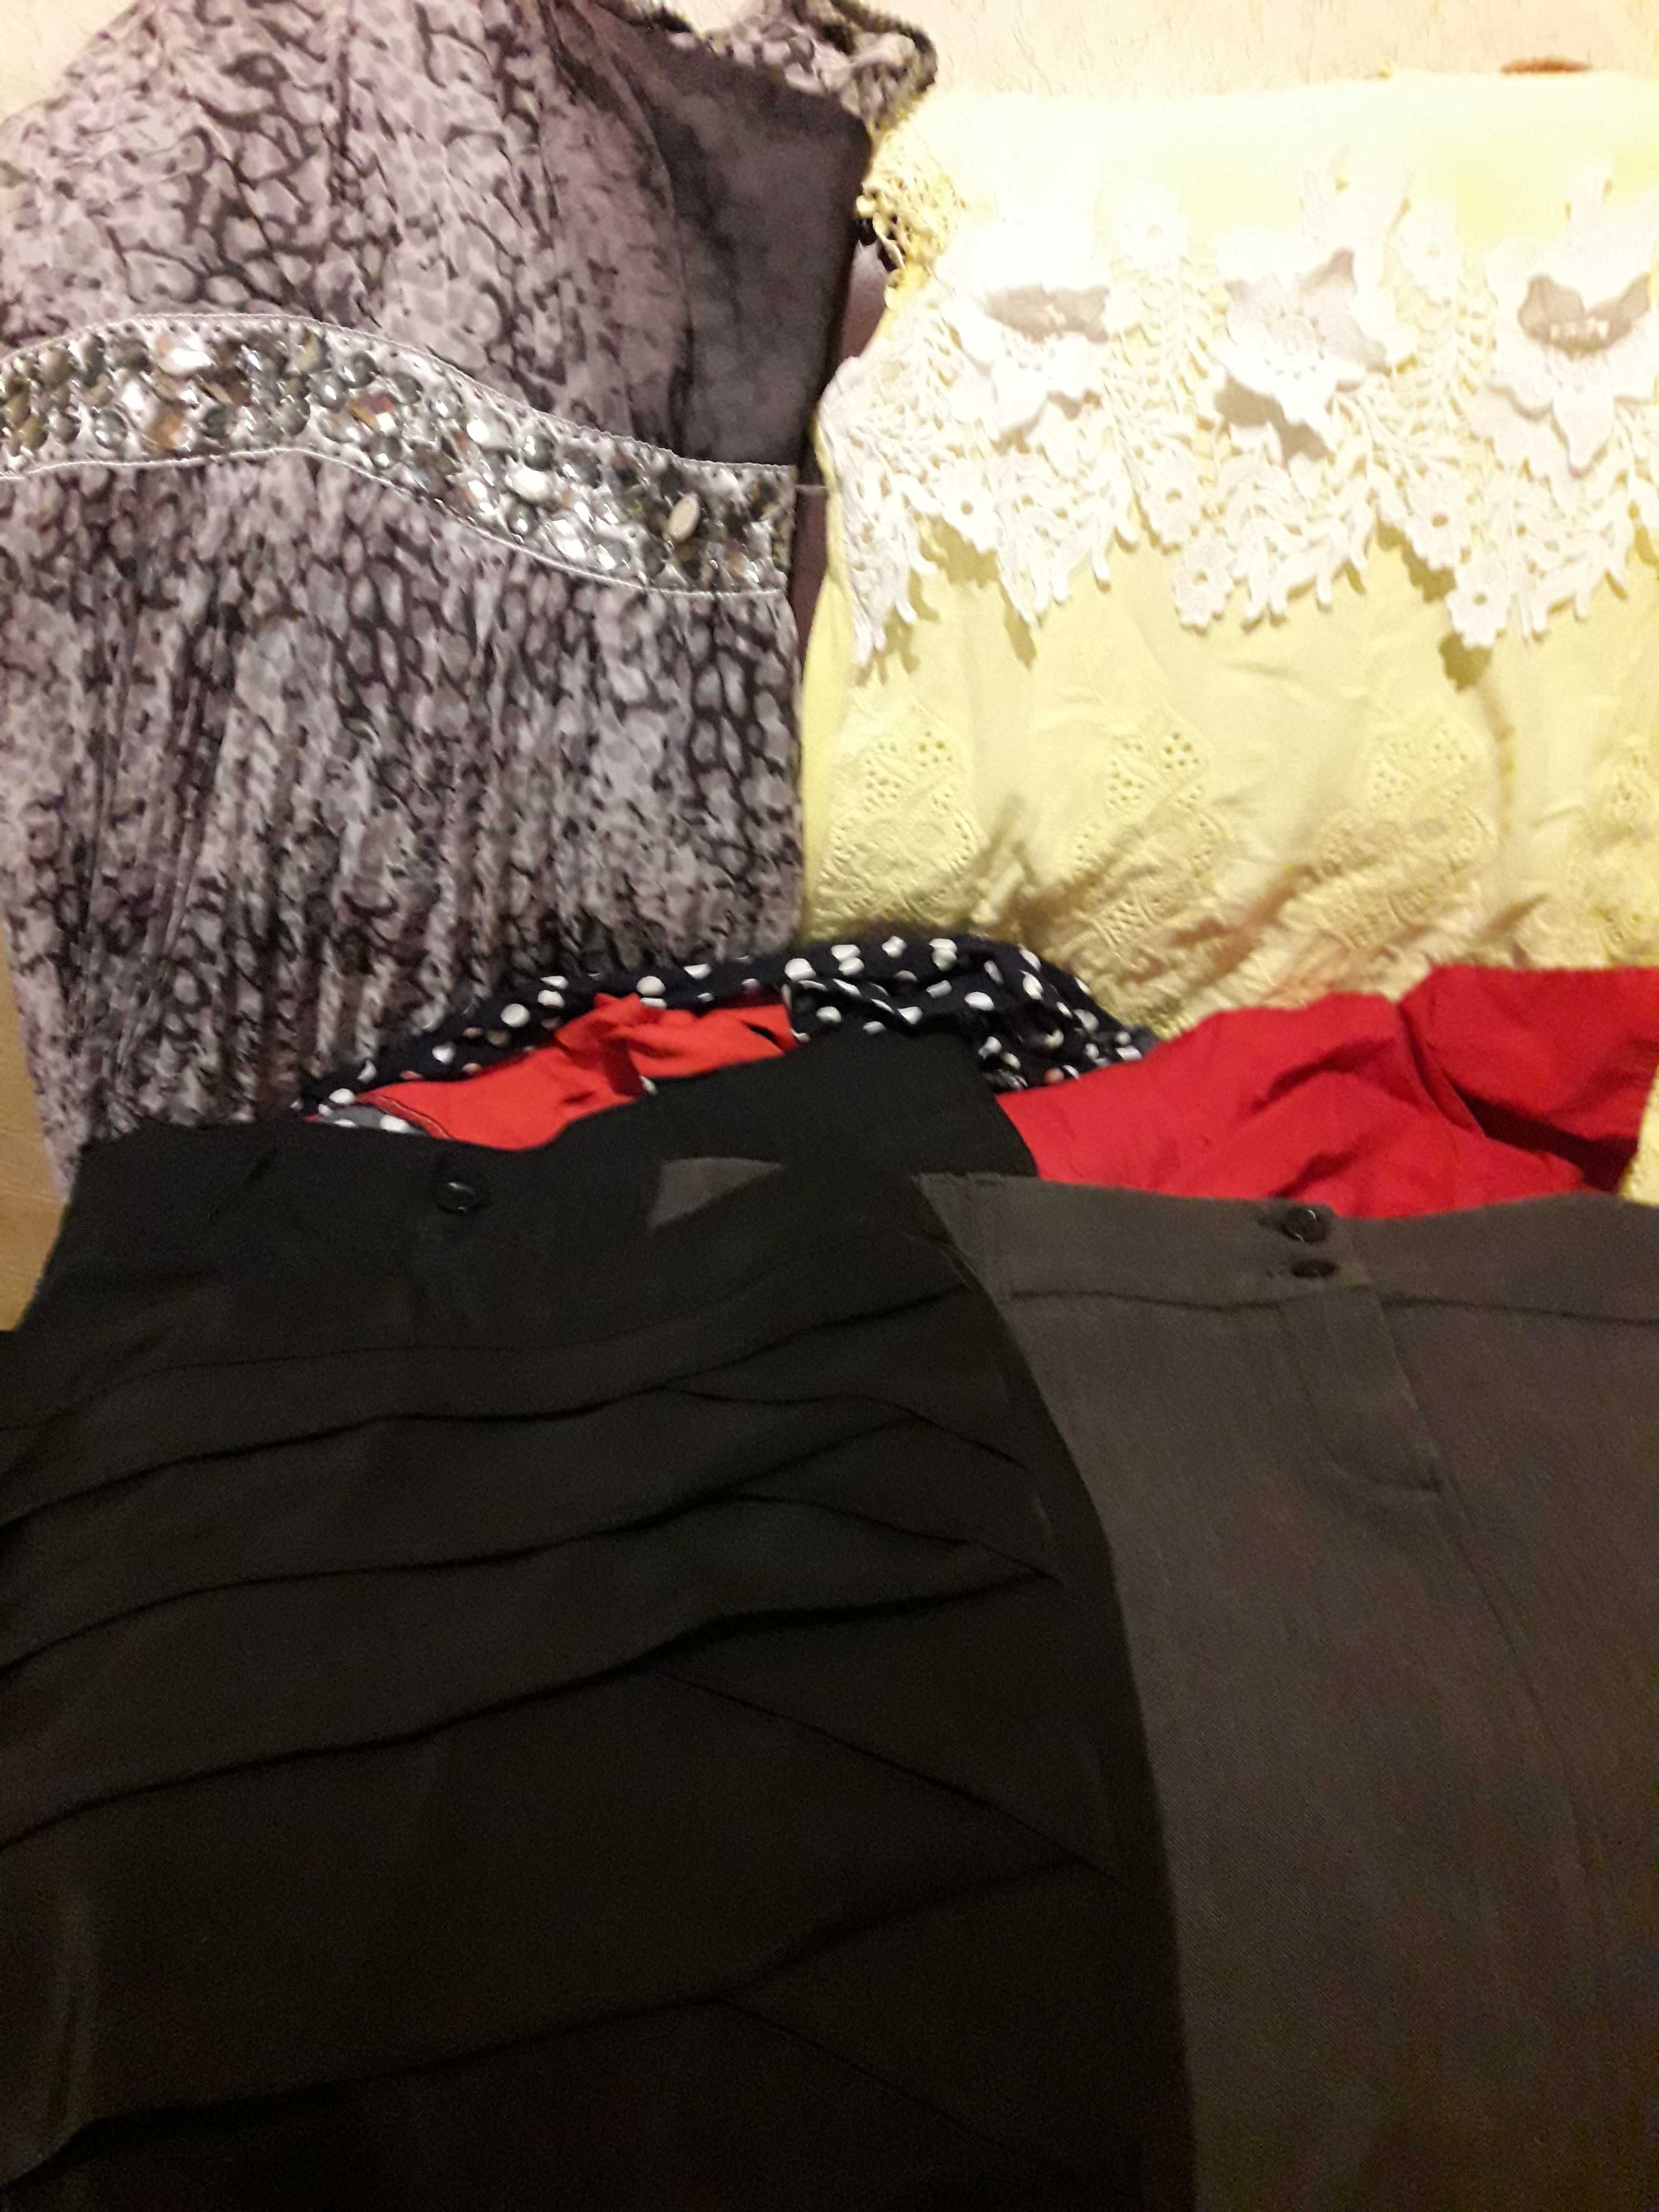 Блузи,спідниці,сукня.Розпродаж жіночих речей. Розмір 42-48. Спідниці,